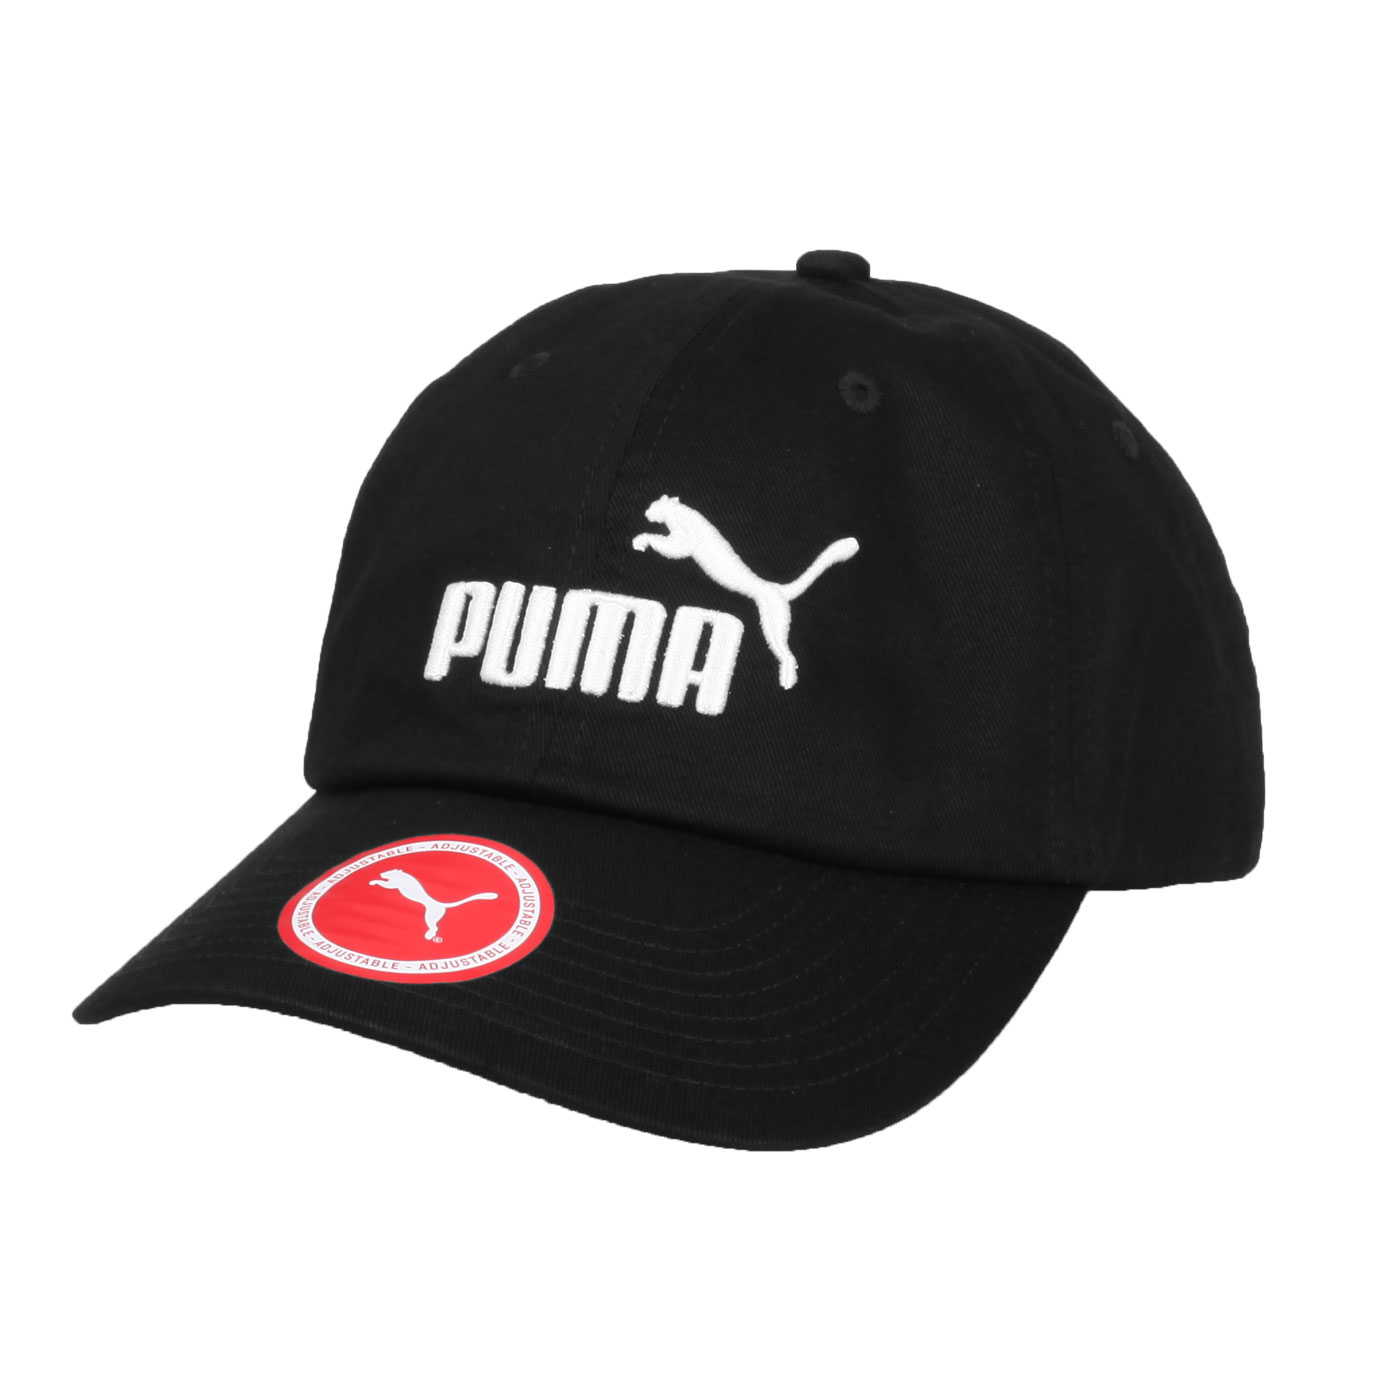 PUMA 基本系列棒球帽 05291909 - 黑白